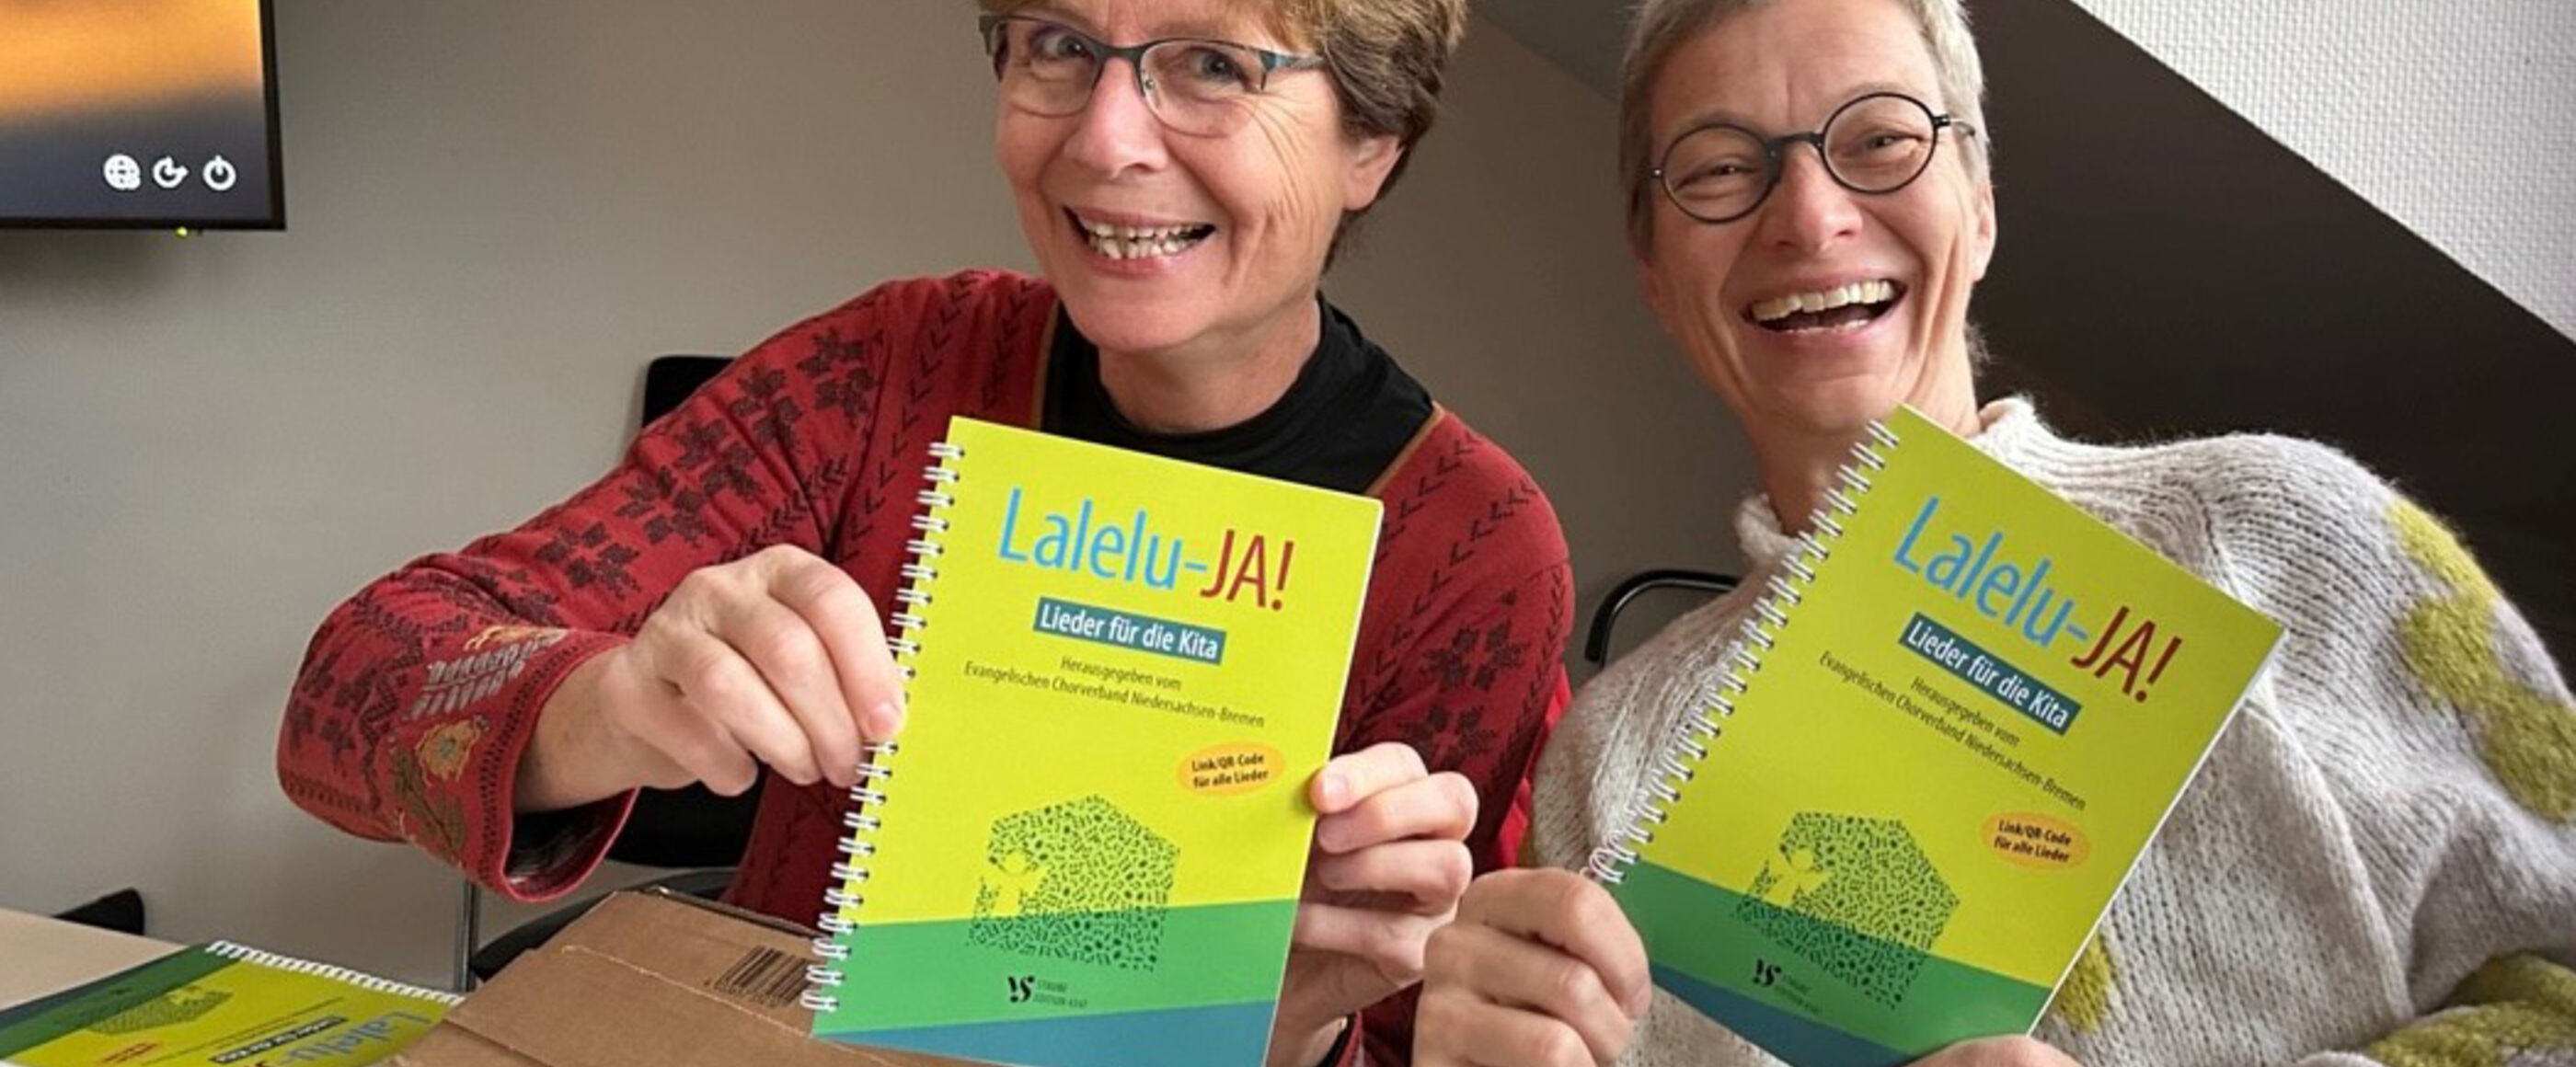 Zwei Frauen zeigen ein grünes Liederbuch mit dem Titel Lalelu-JA!